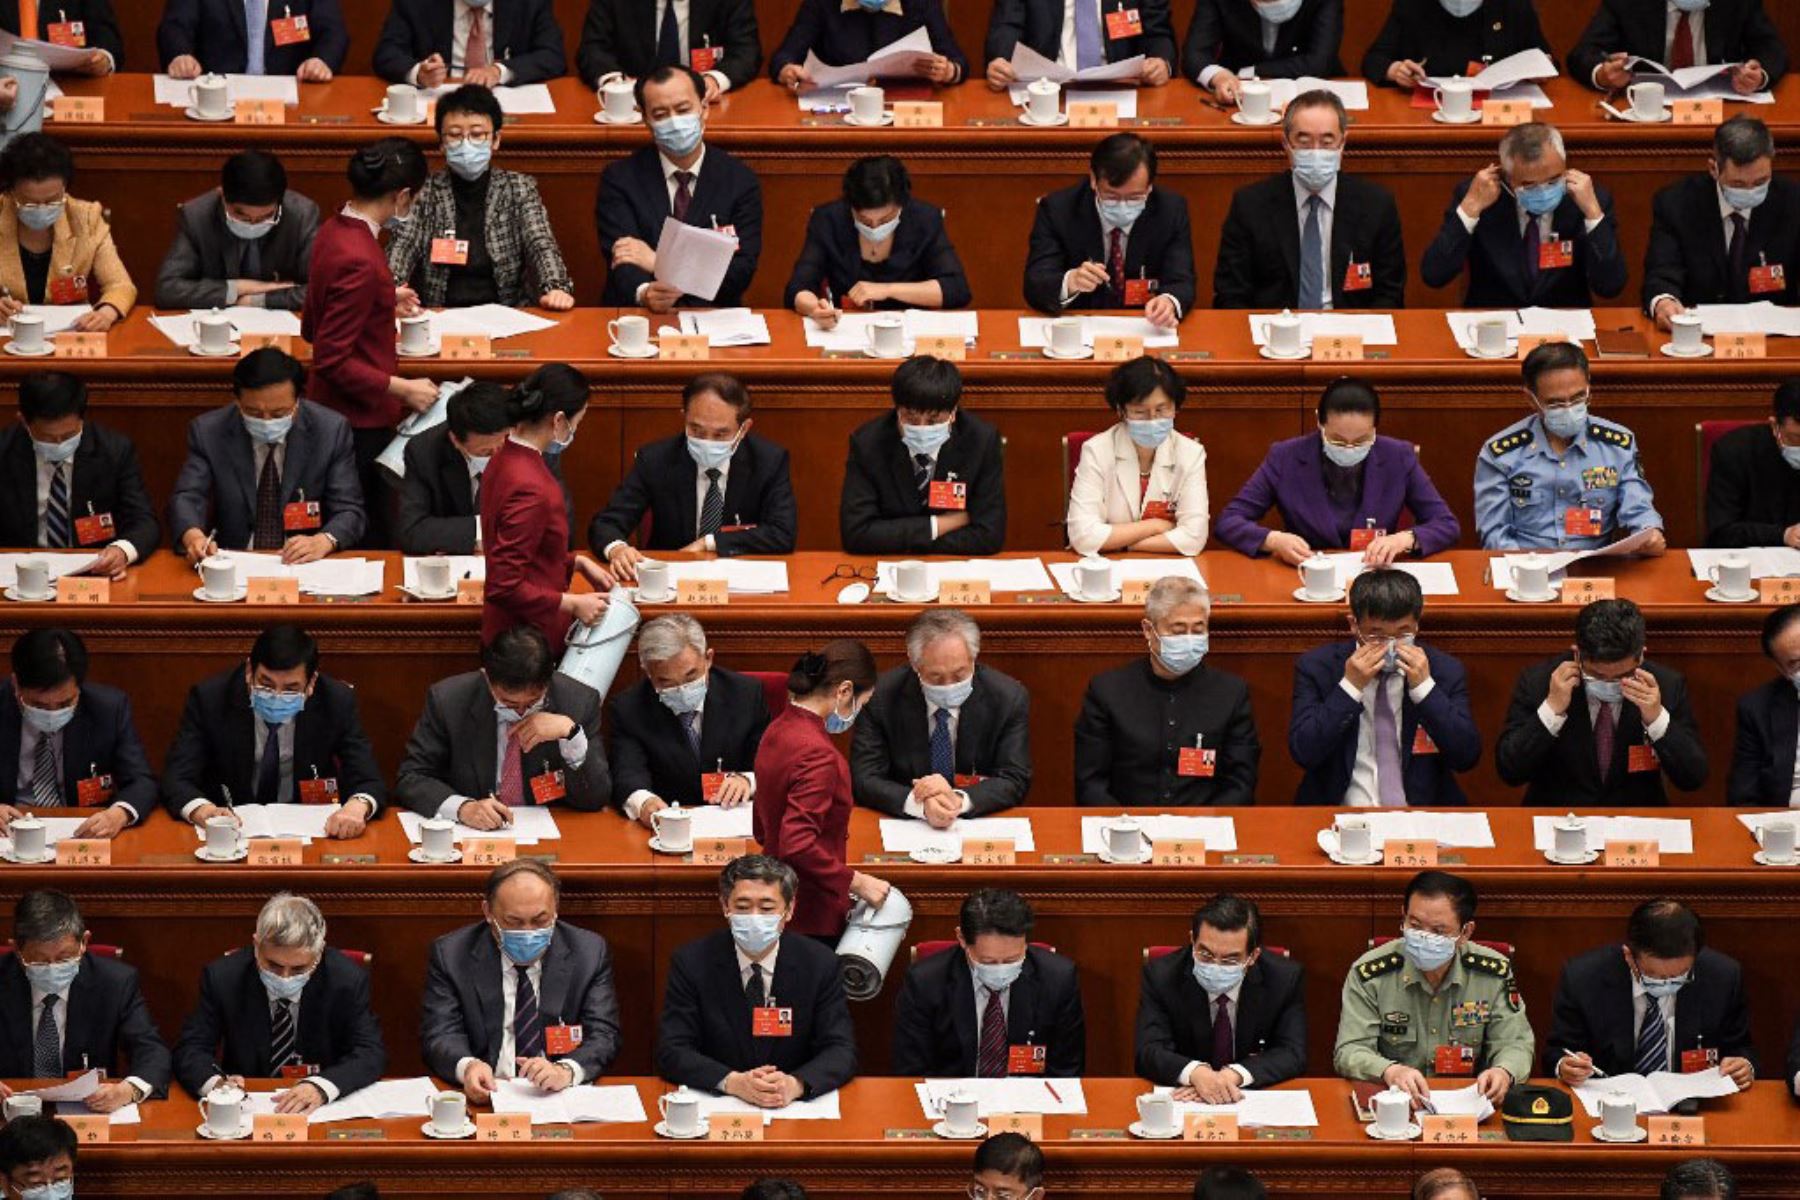 Las azafatas sirven té a los delegados durante la sesión de apertura de la Conferencia Consultiva Política del Pueblo Chino (CPPCC) en el Gran Salón del Pueblo en Beijing.
Foto: AFP